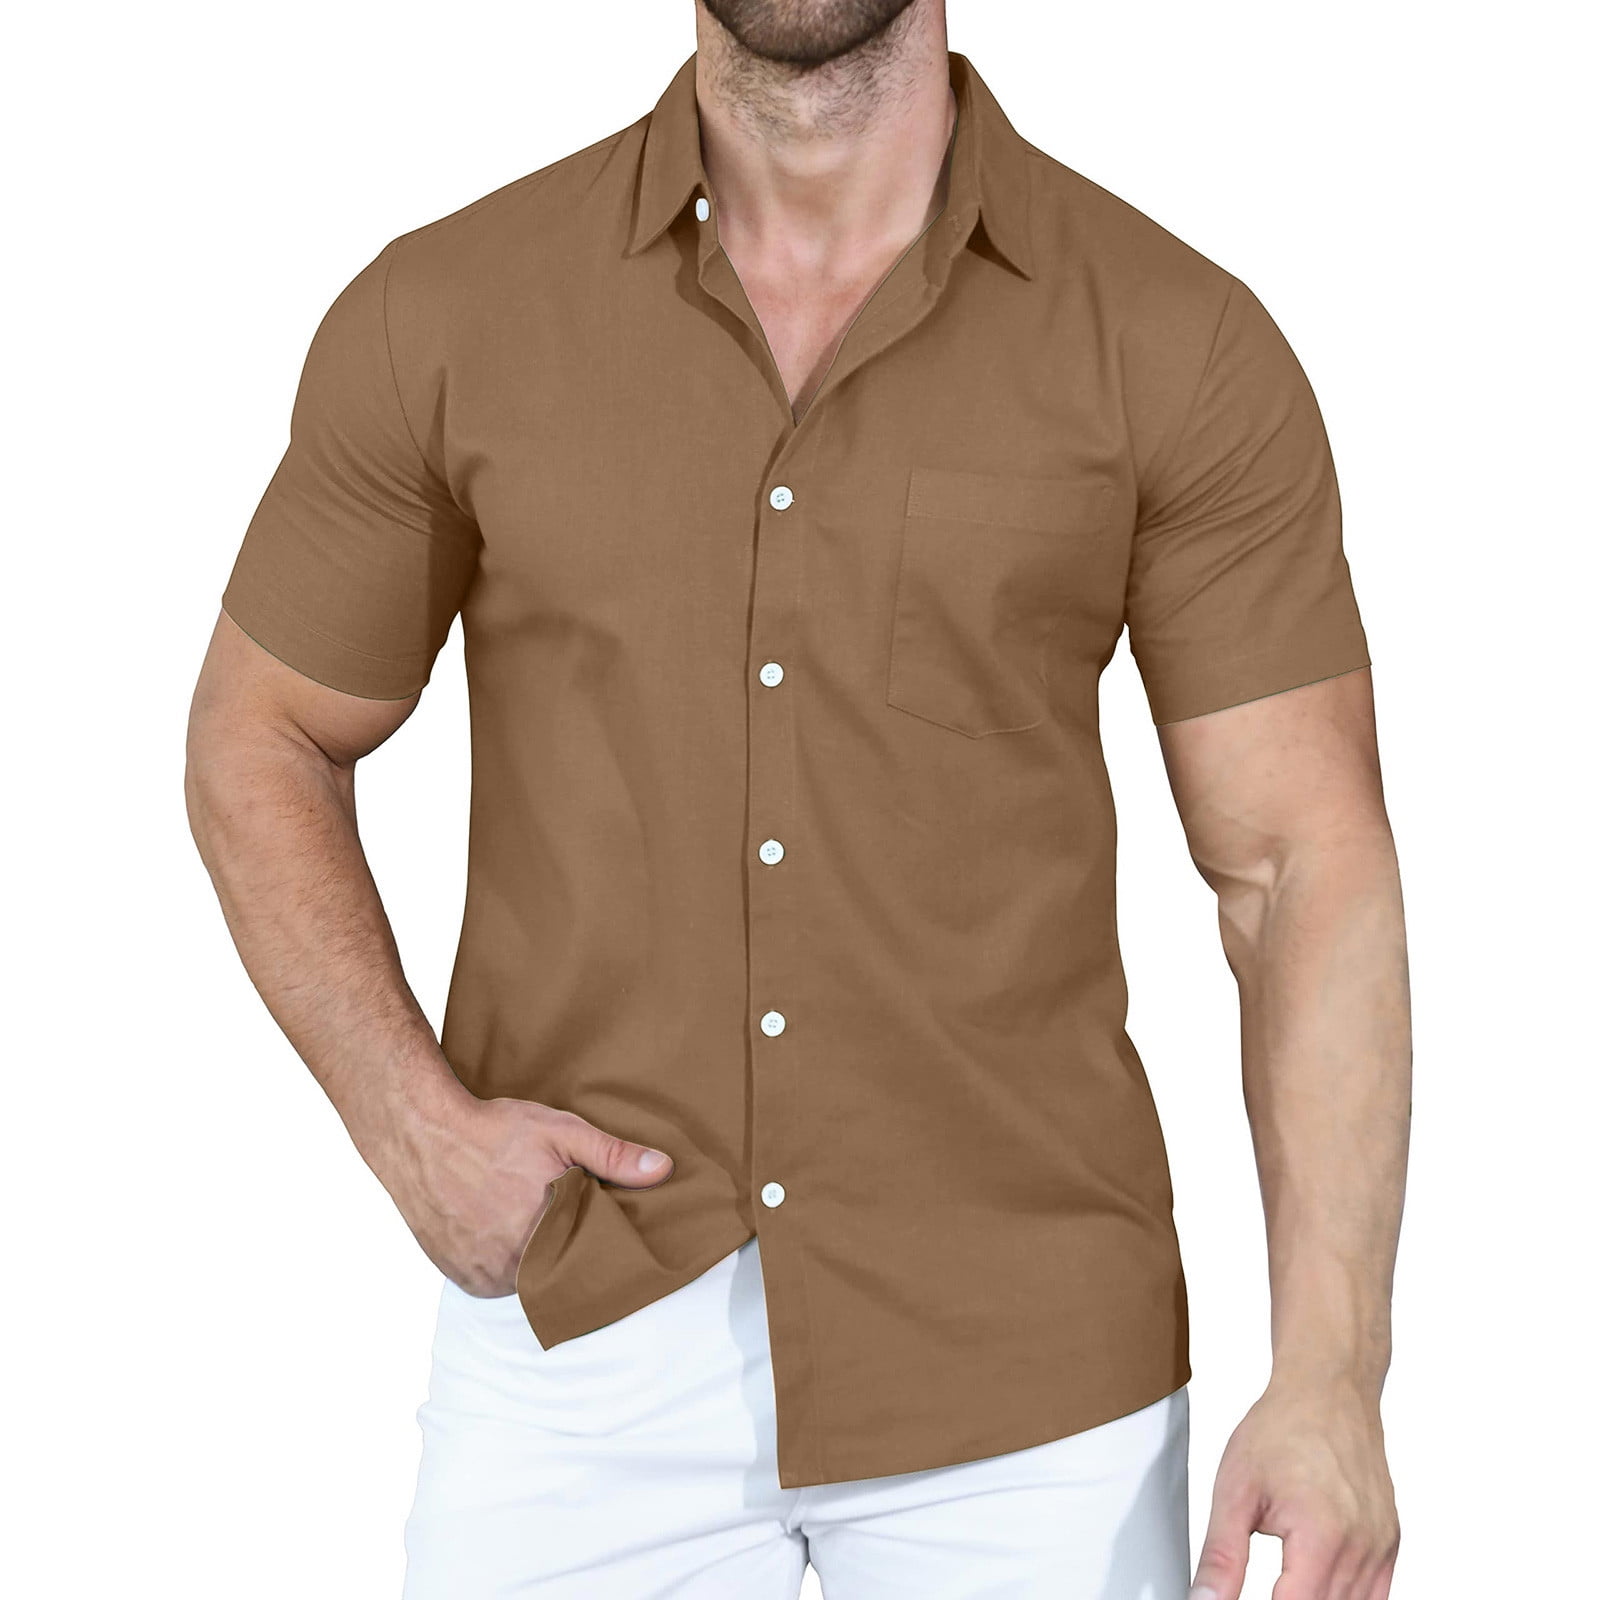 RYRJJ Men's Short Sleeve Button Up Linen Shirts Summer Casual Pocket Beach  Dress Shirts(Brown,XL)